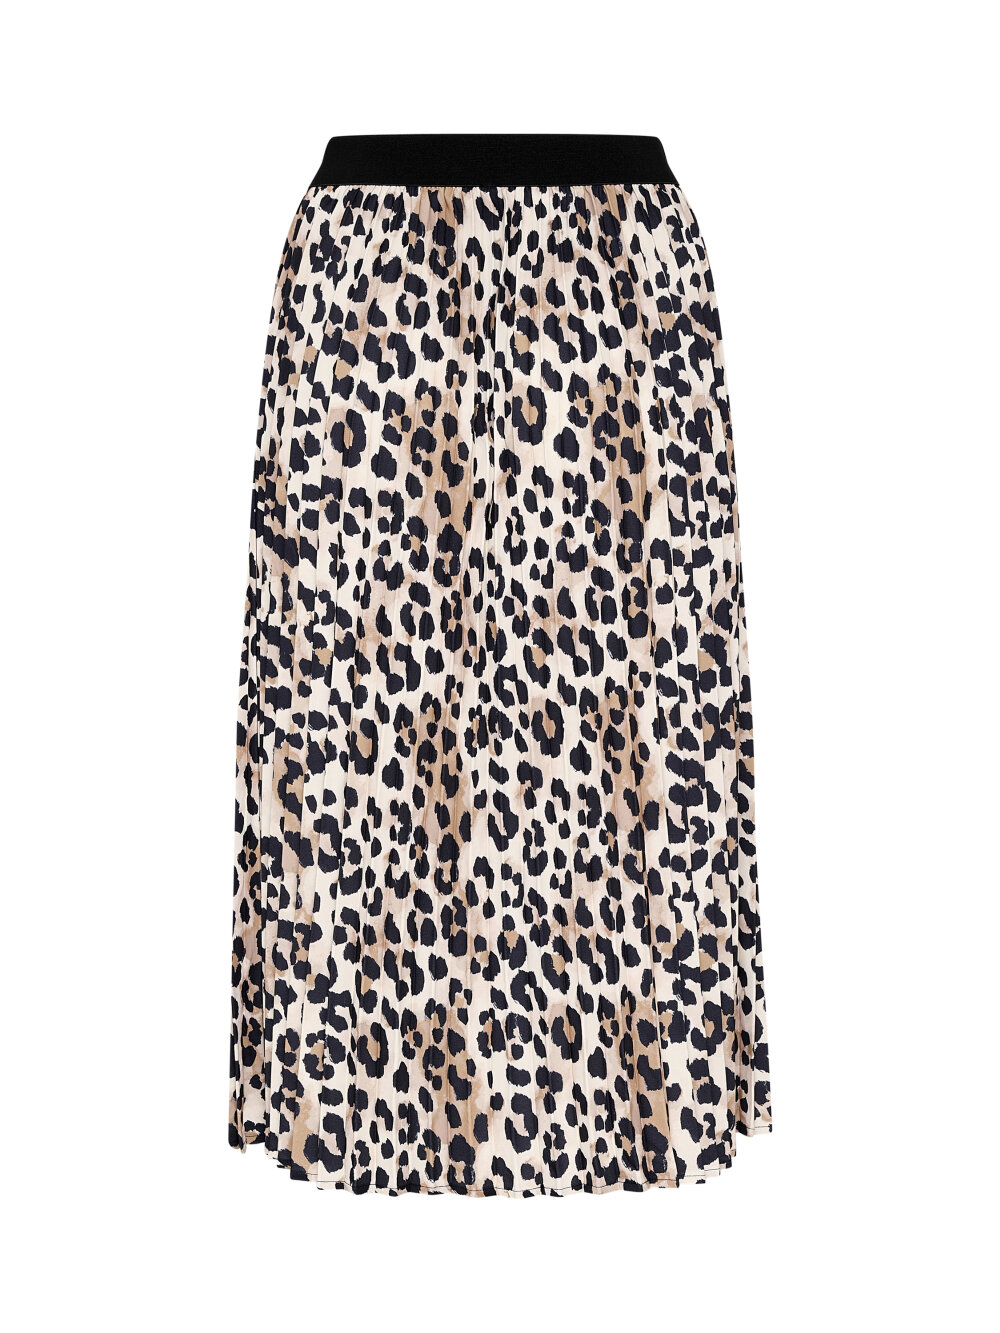 Culture - CUbetty leopard Skirt